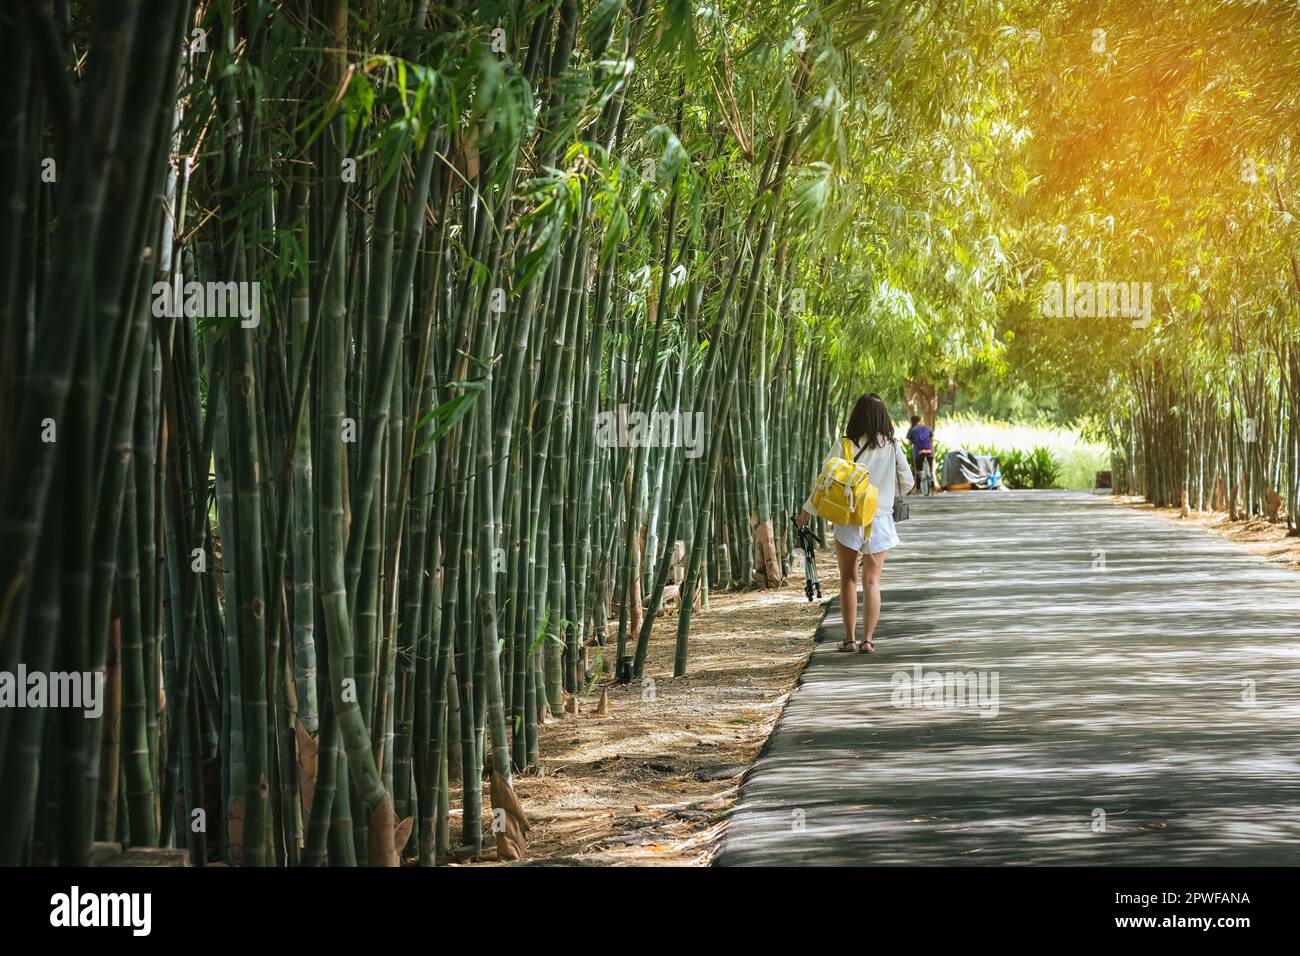 Motel Arqueológico Guión Vista posterior de la mujer joven con mochila de fotos y la celebración de  paseos trípode solo para encontrar la ubicación de photoshoot en el jardín  de bambú. Happ de la diversión